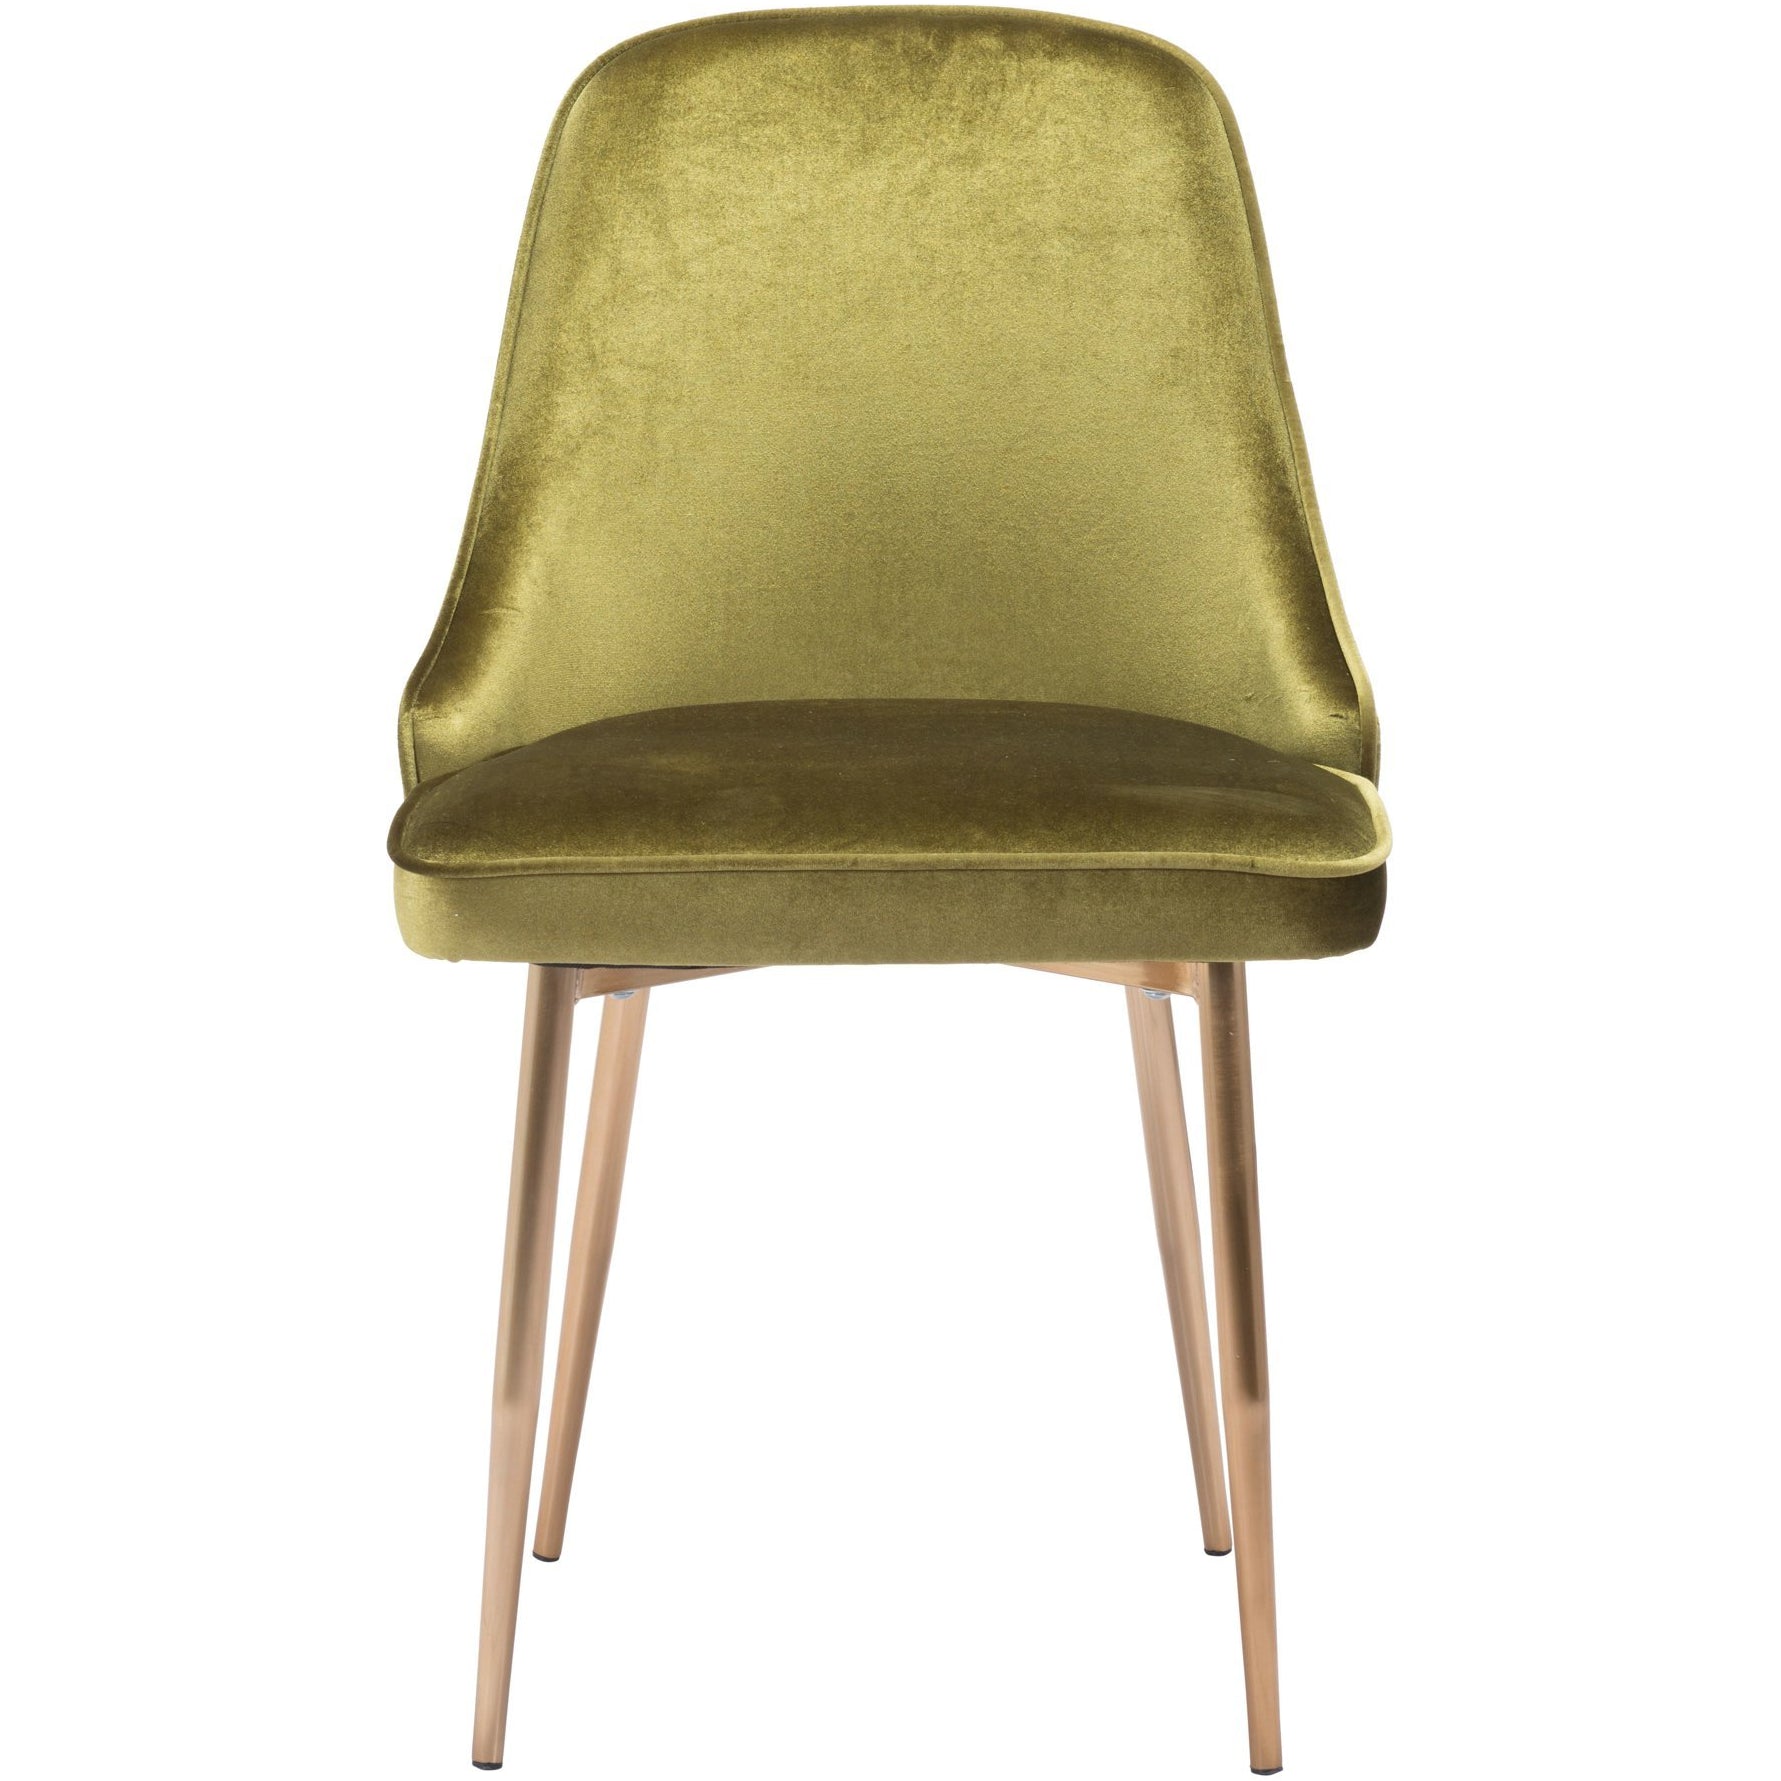 Zuo Modern Merritt Dining Chair Green Velvet - 100840-Dining Chairs-Zuo Modern-Minimal And Modern Canada